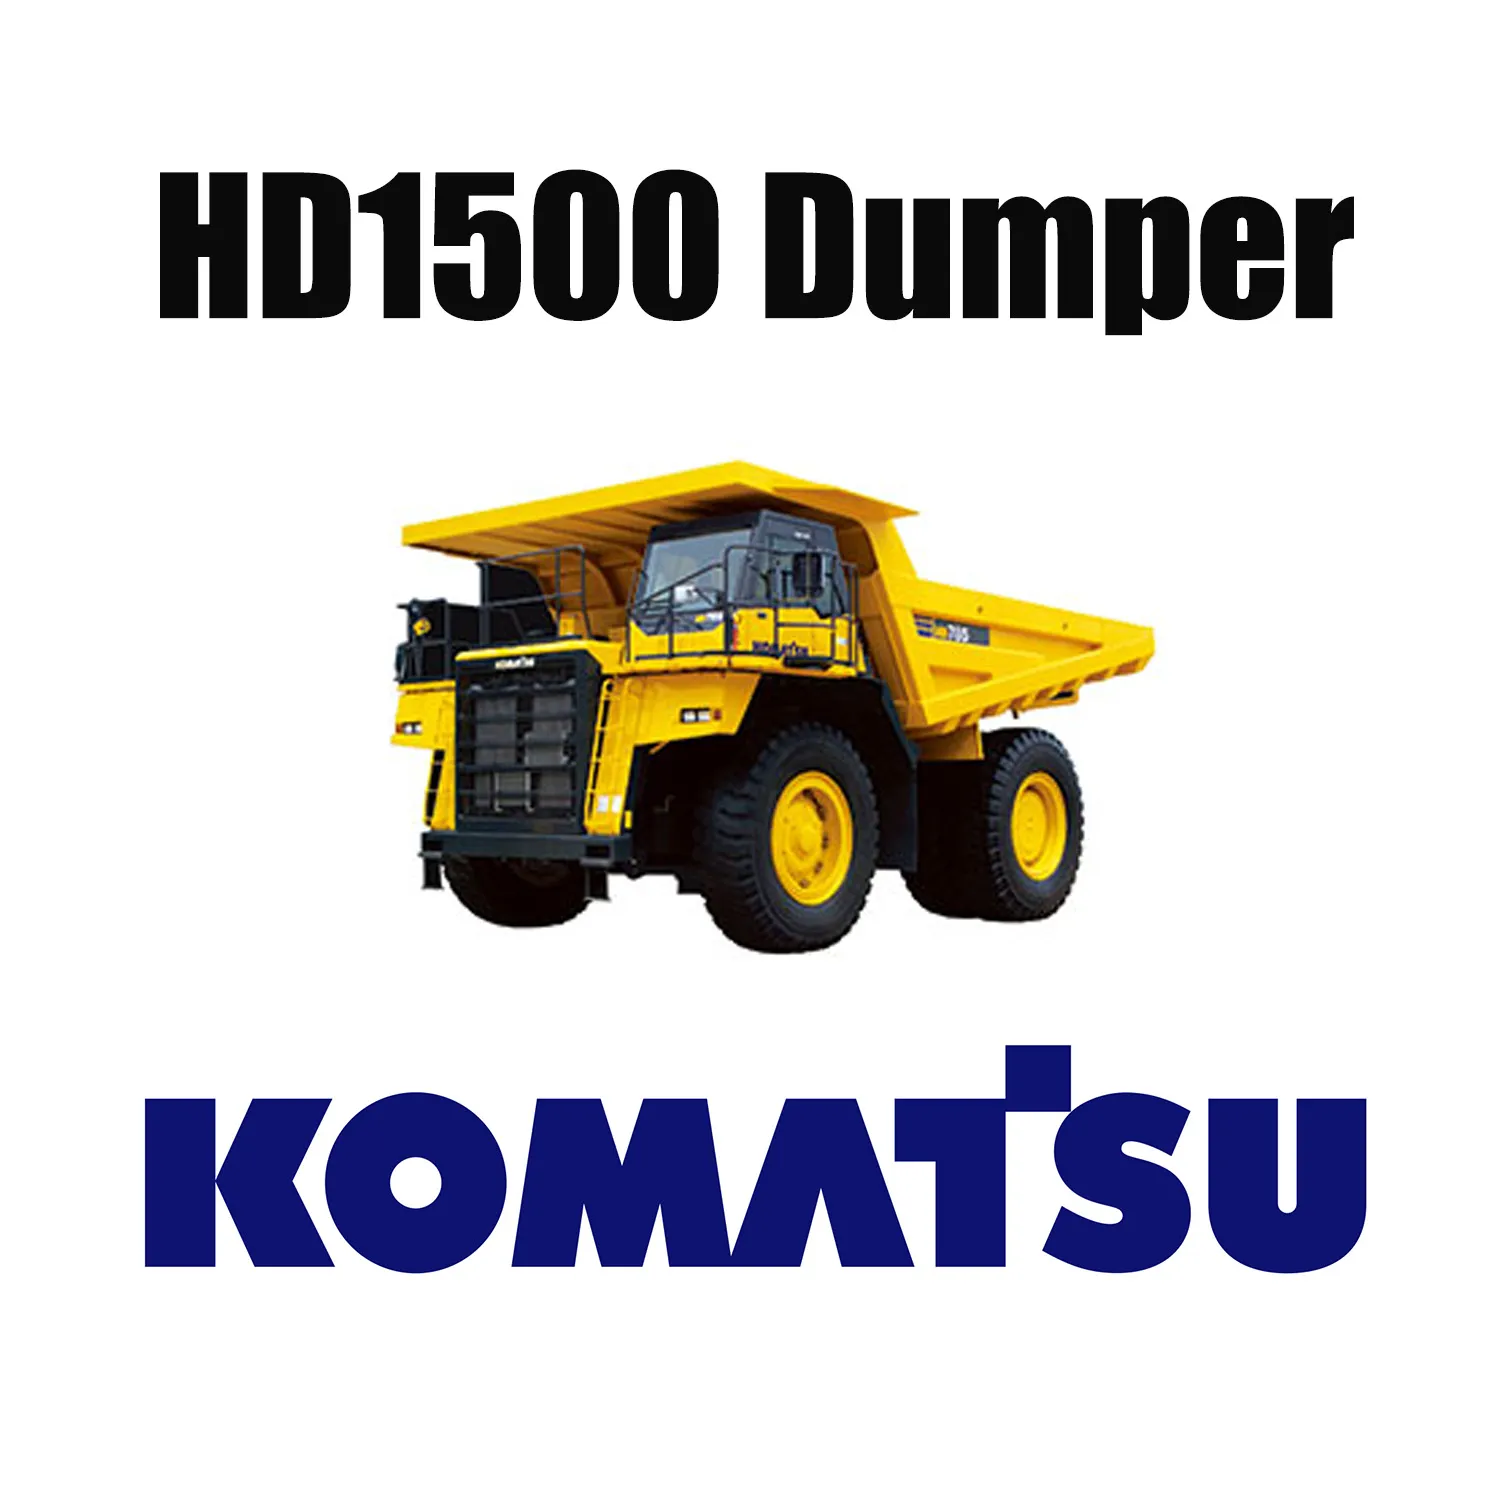 KOMATSU HD1500 mechanische vrachtwagen geschikt voor speciale grondverzetbanden 33.00R51